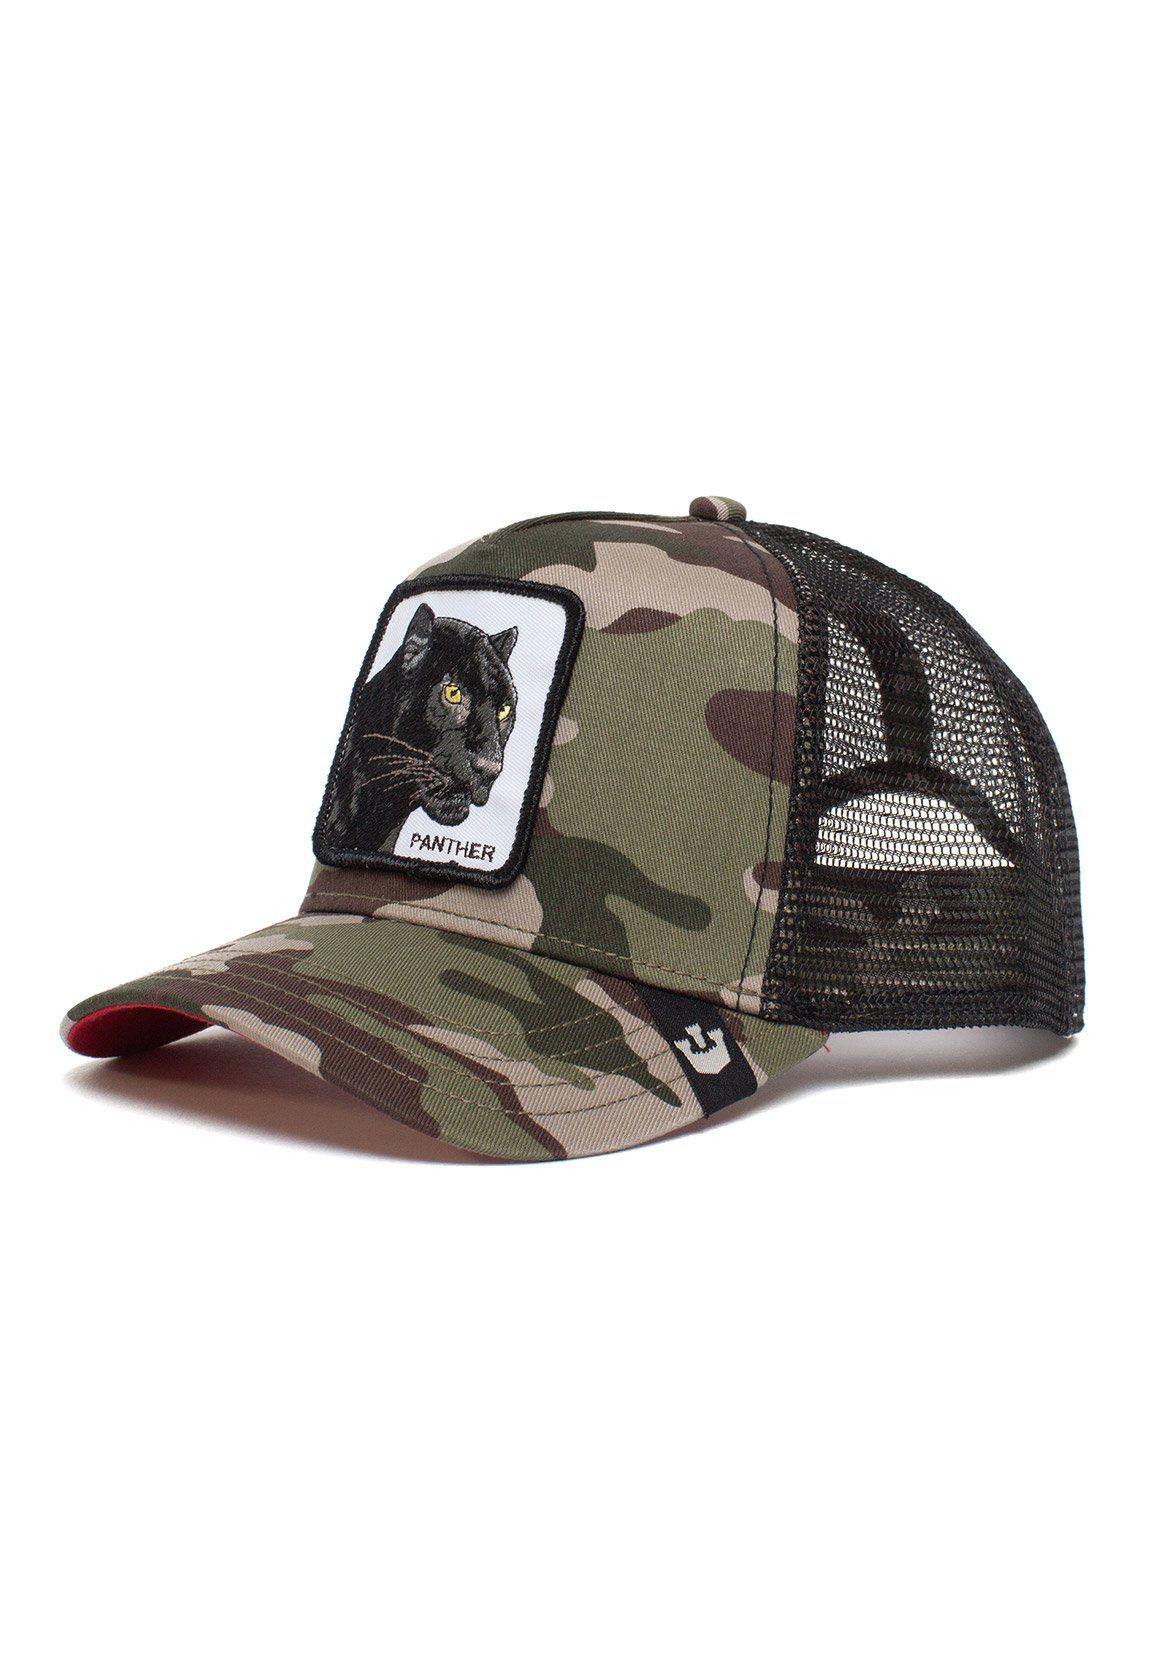 GOORIN Bros. Trucker Cap Goorin Bros. Trucker Cap PANTHER Camouflage The Panther Camouflage | Baseball Caps